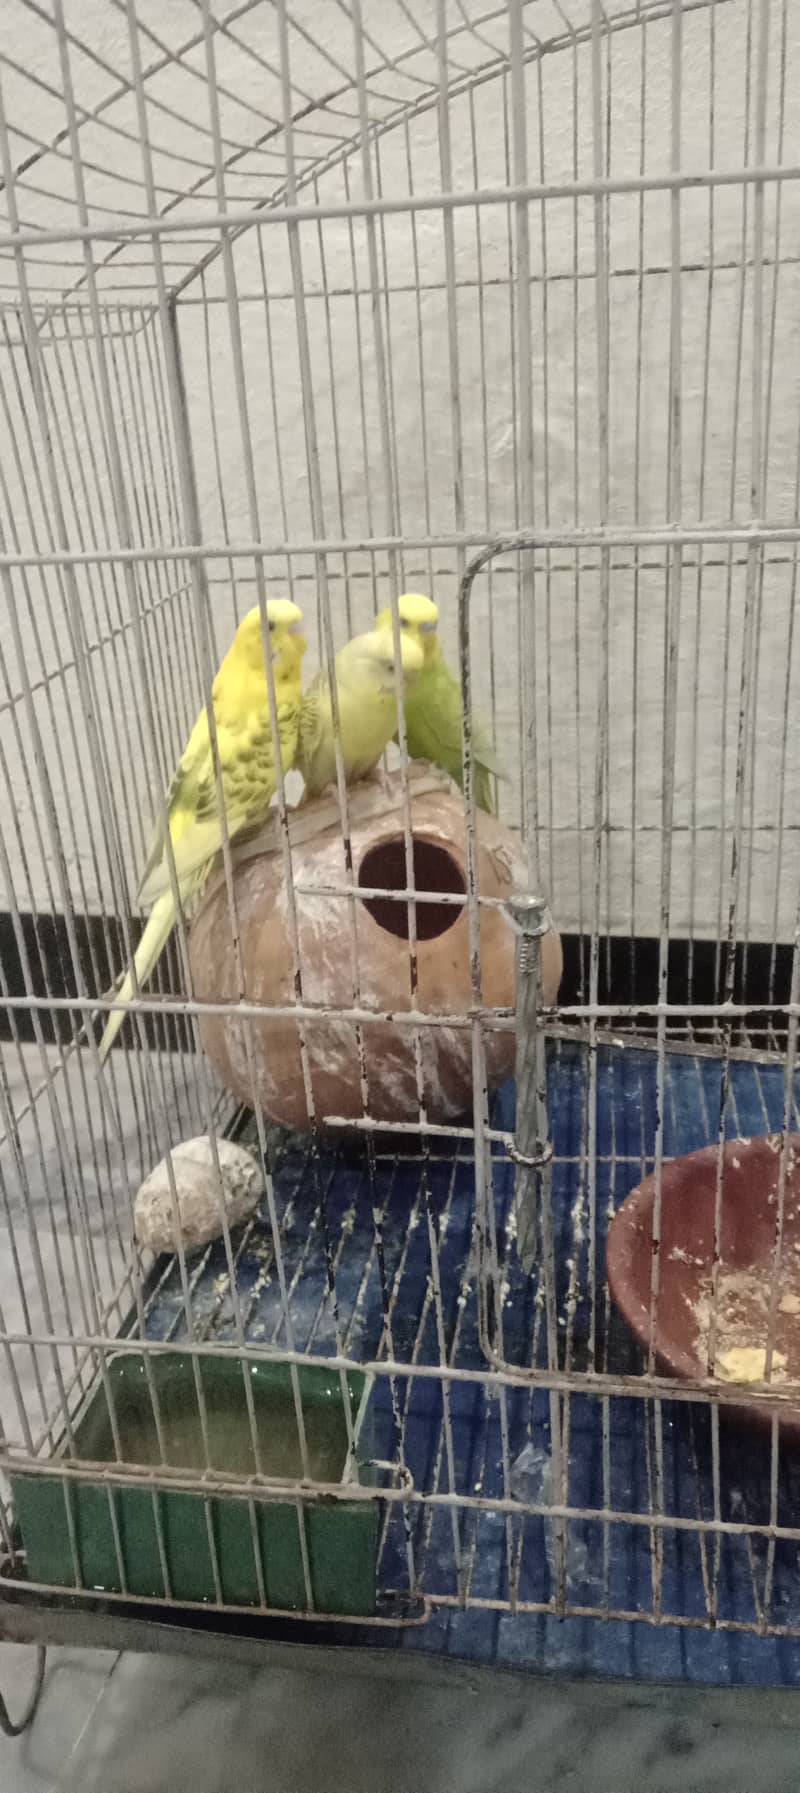 3 parrots 18